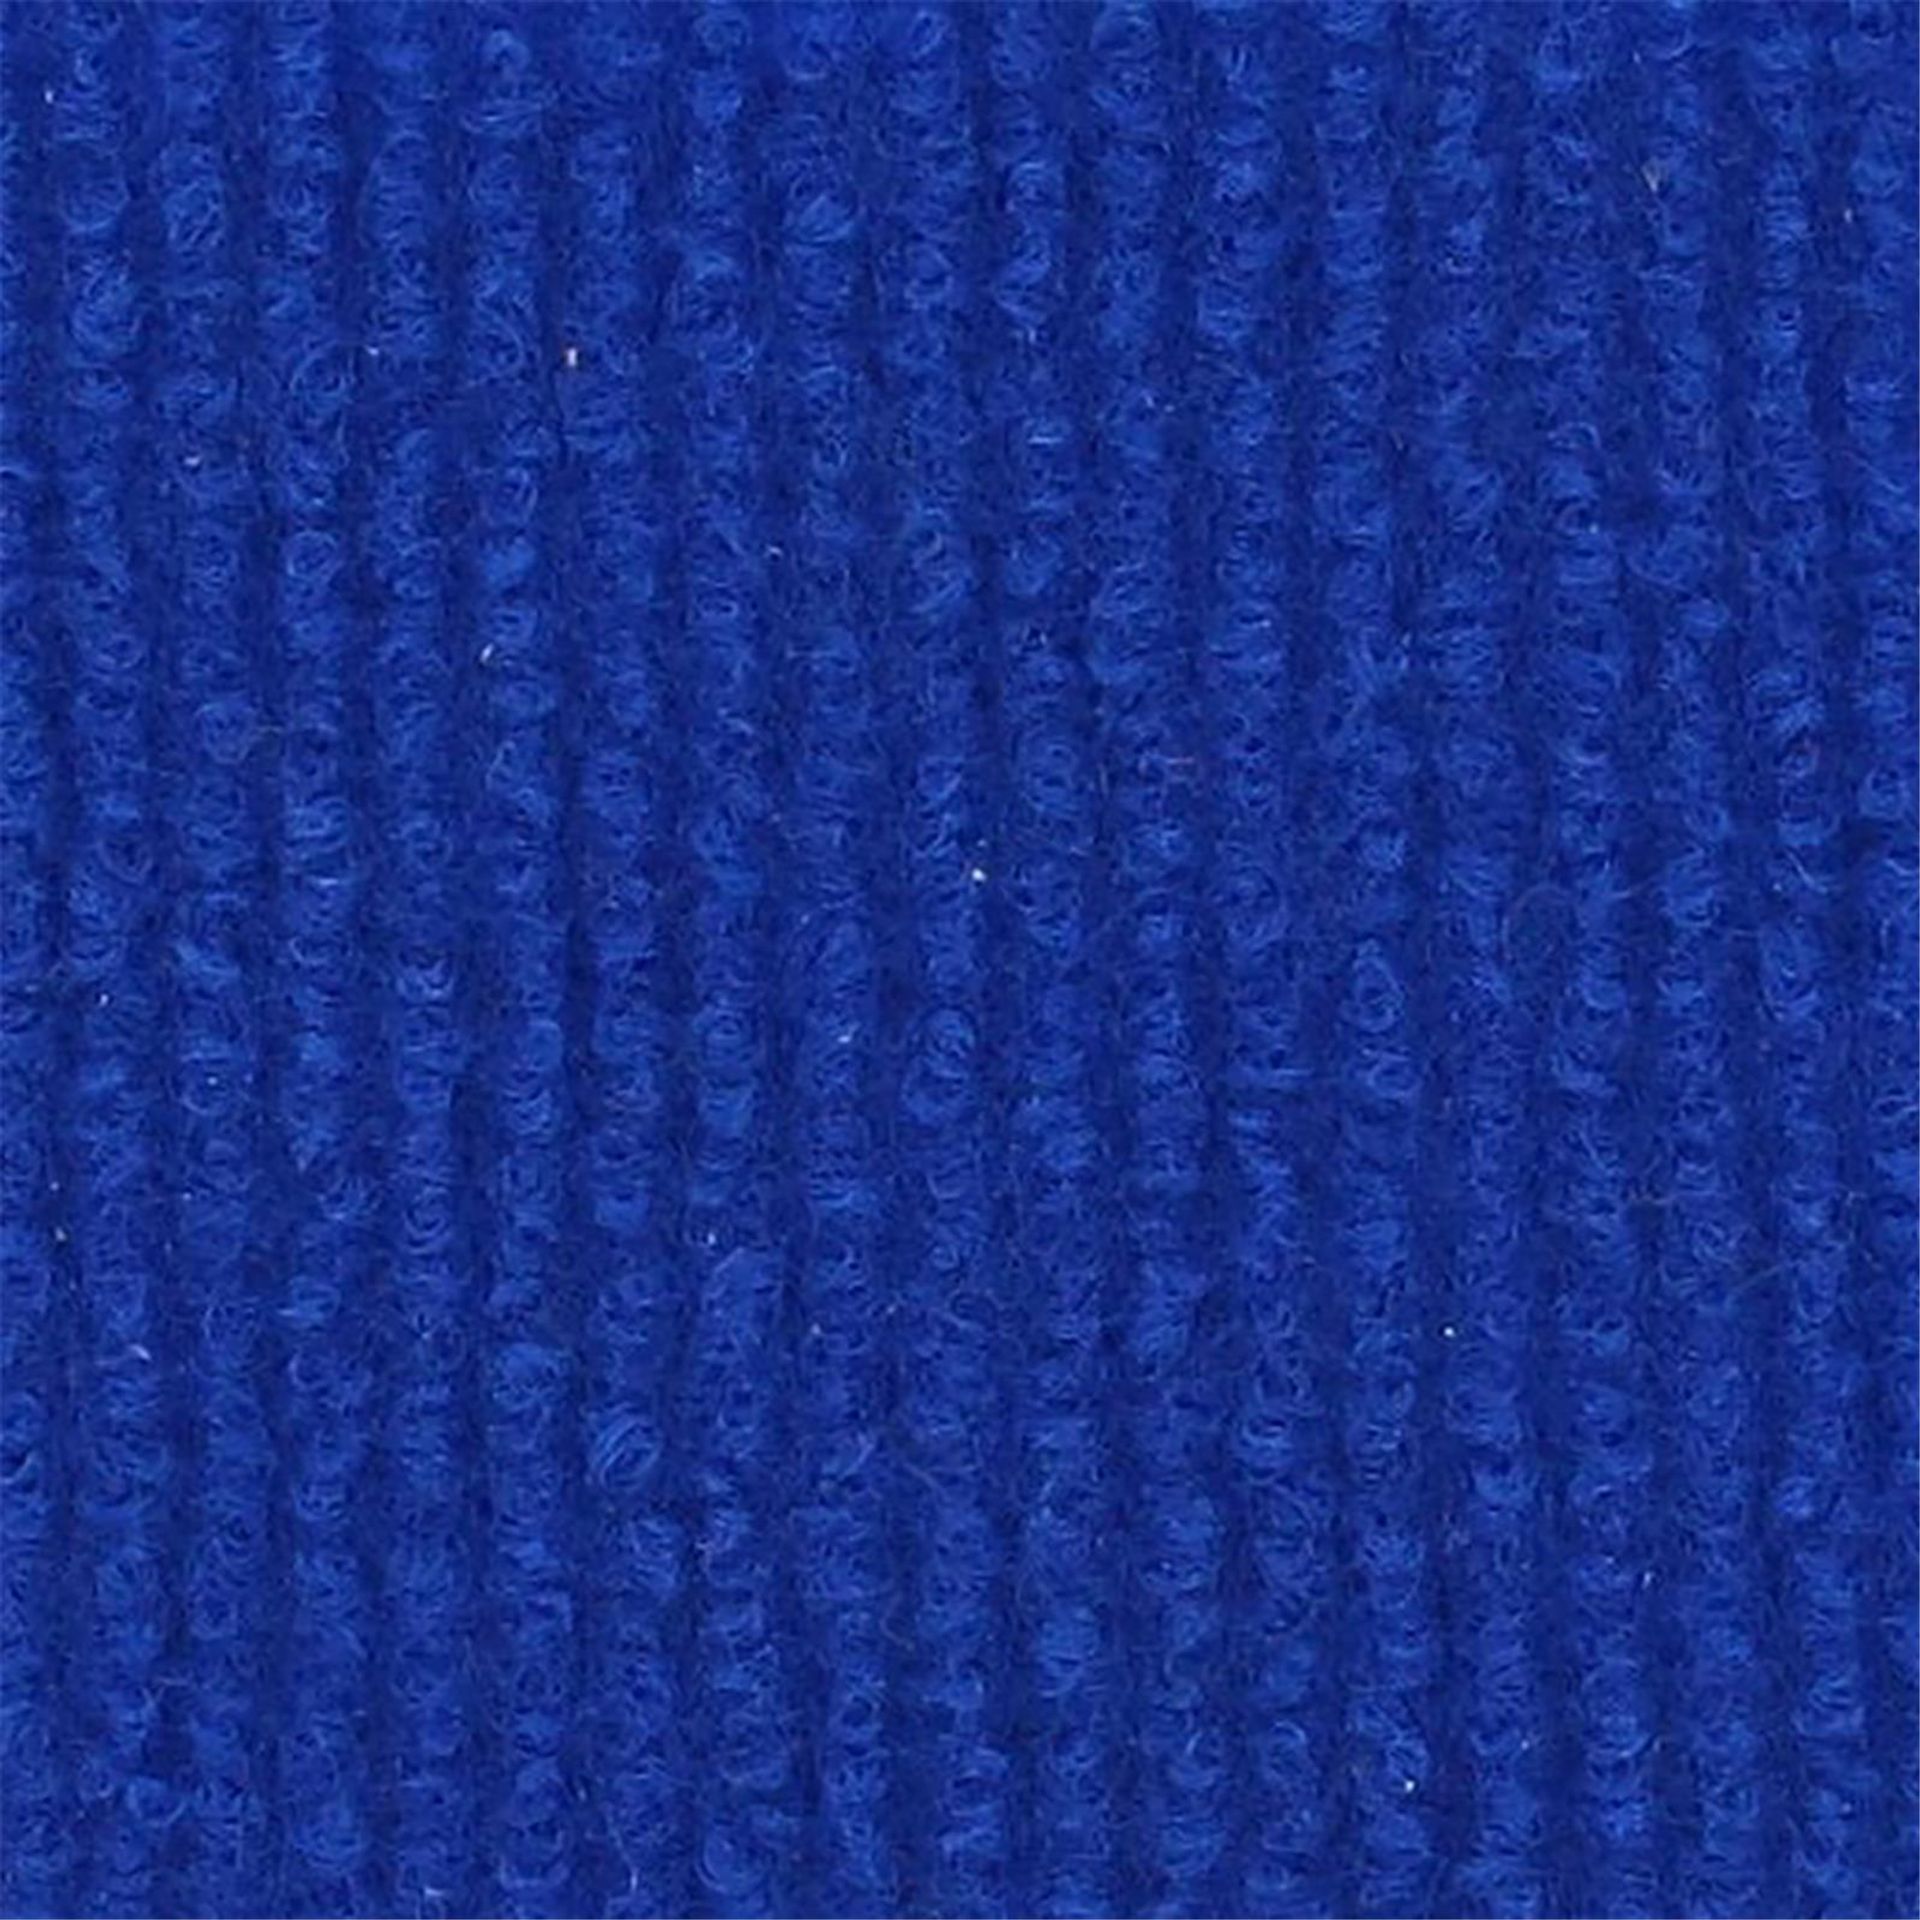 Messeboden Rips-Nadelvlies EXPOLINE Royal Blue 0824 100qm ohne Schutzfolie - Rollenbreite 200 cm